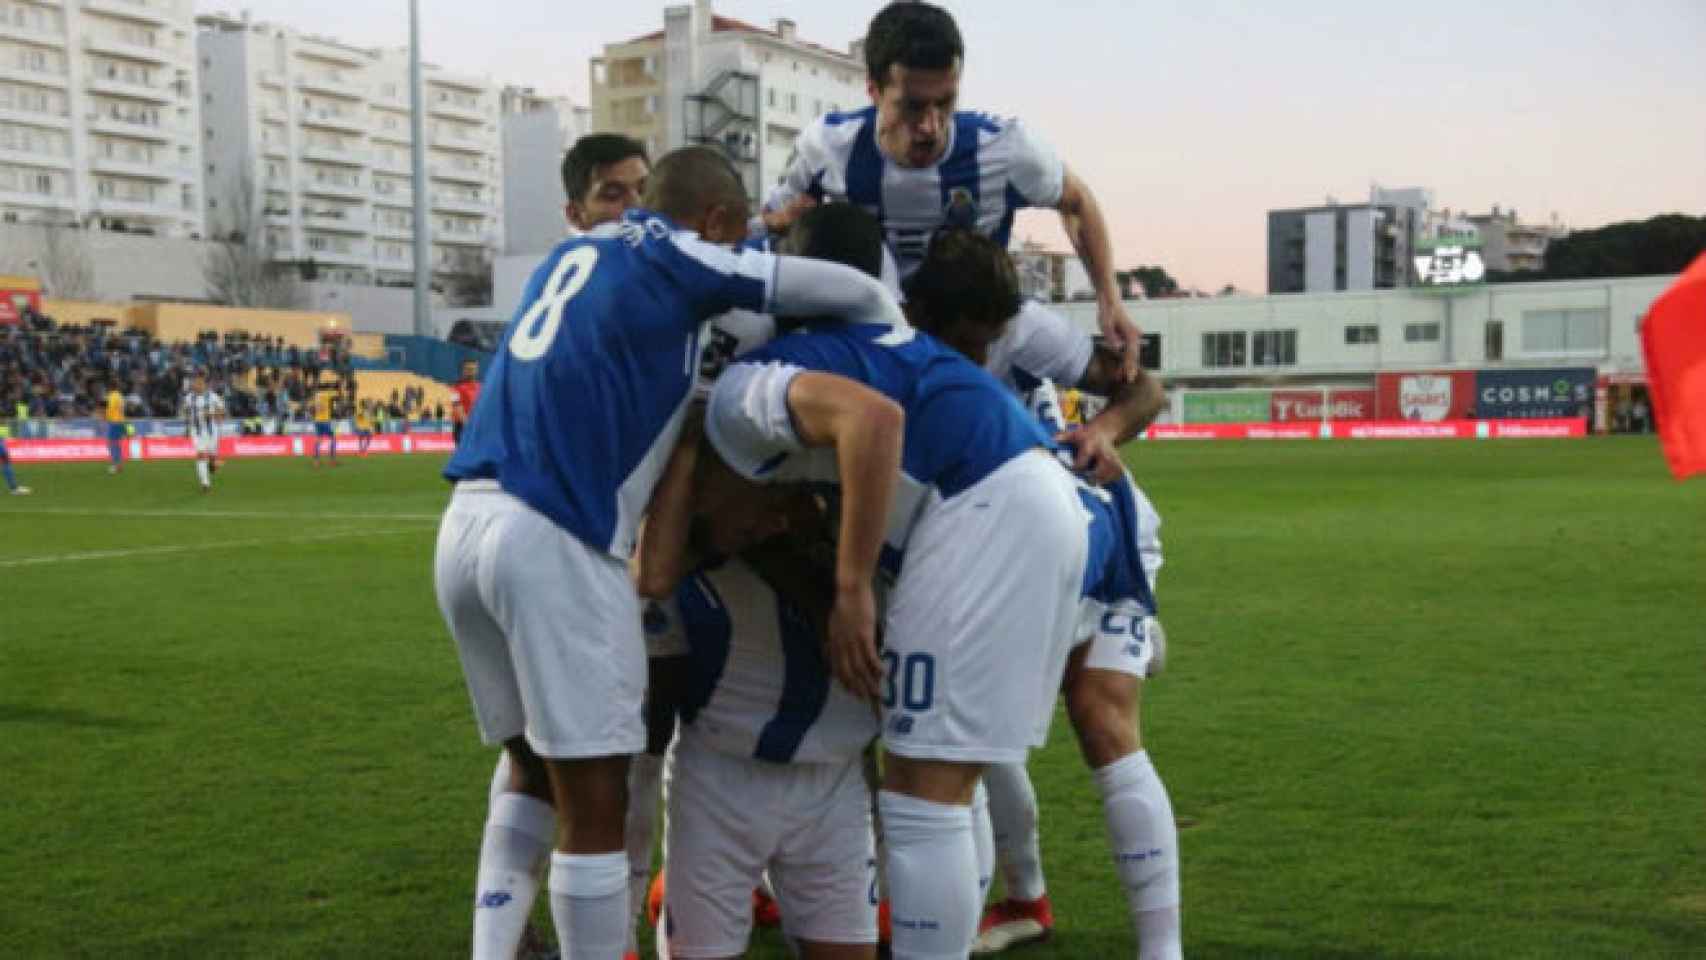 Los jugadores del Oporto celebran un gol en el partido ante el Estoril ahora investigado.